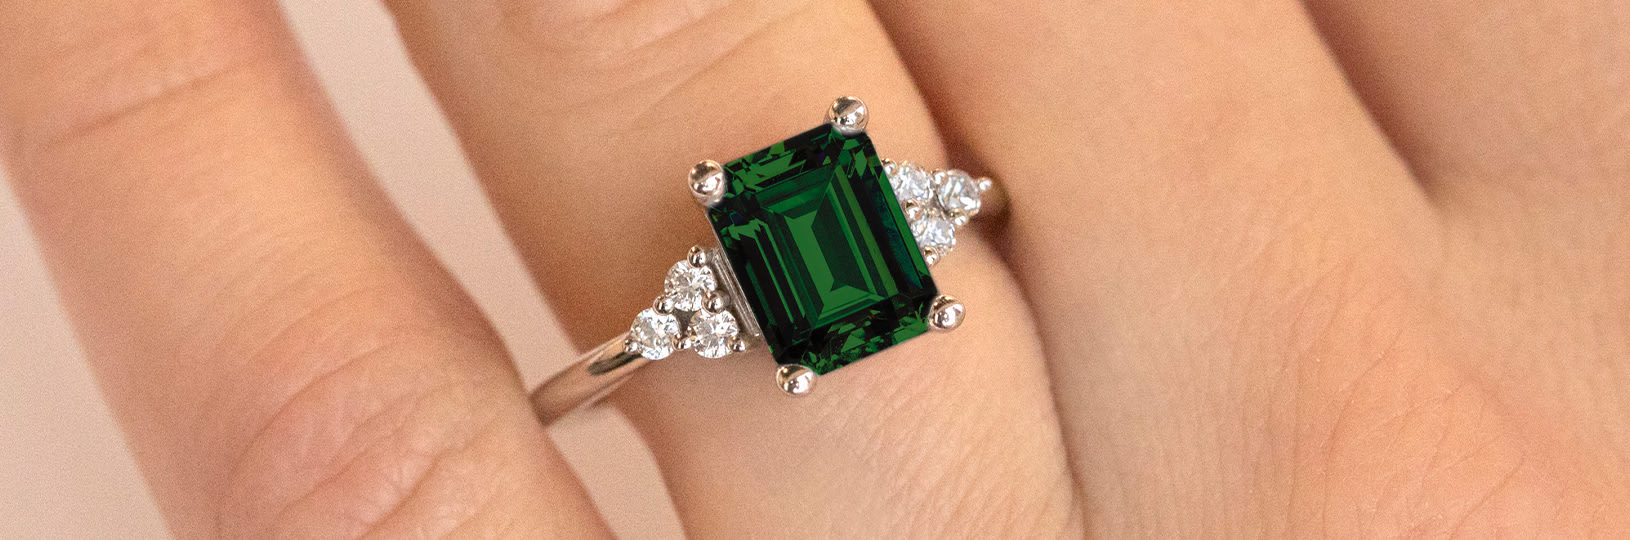 beroemd Raar scheuren Beauty of Emerald Green Engagement Rings - Diamond Nexus